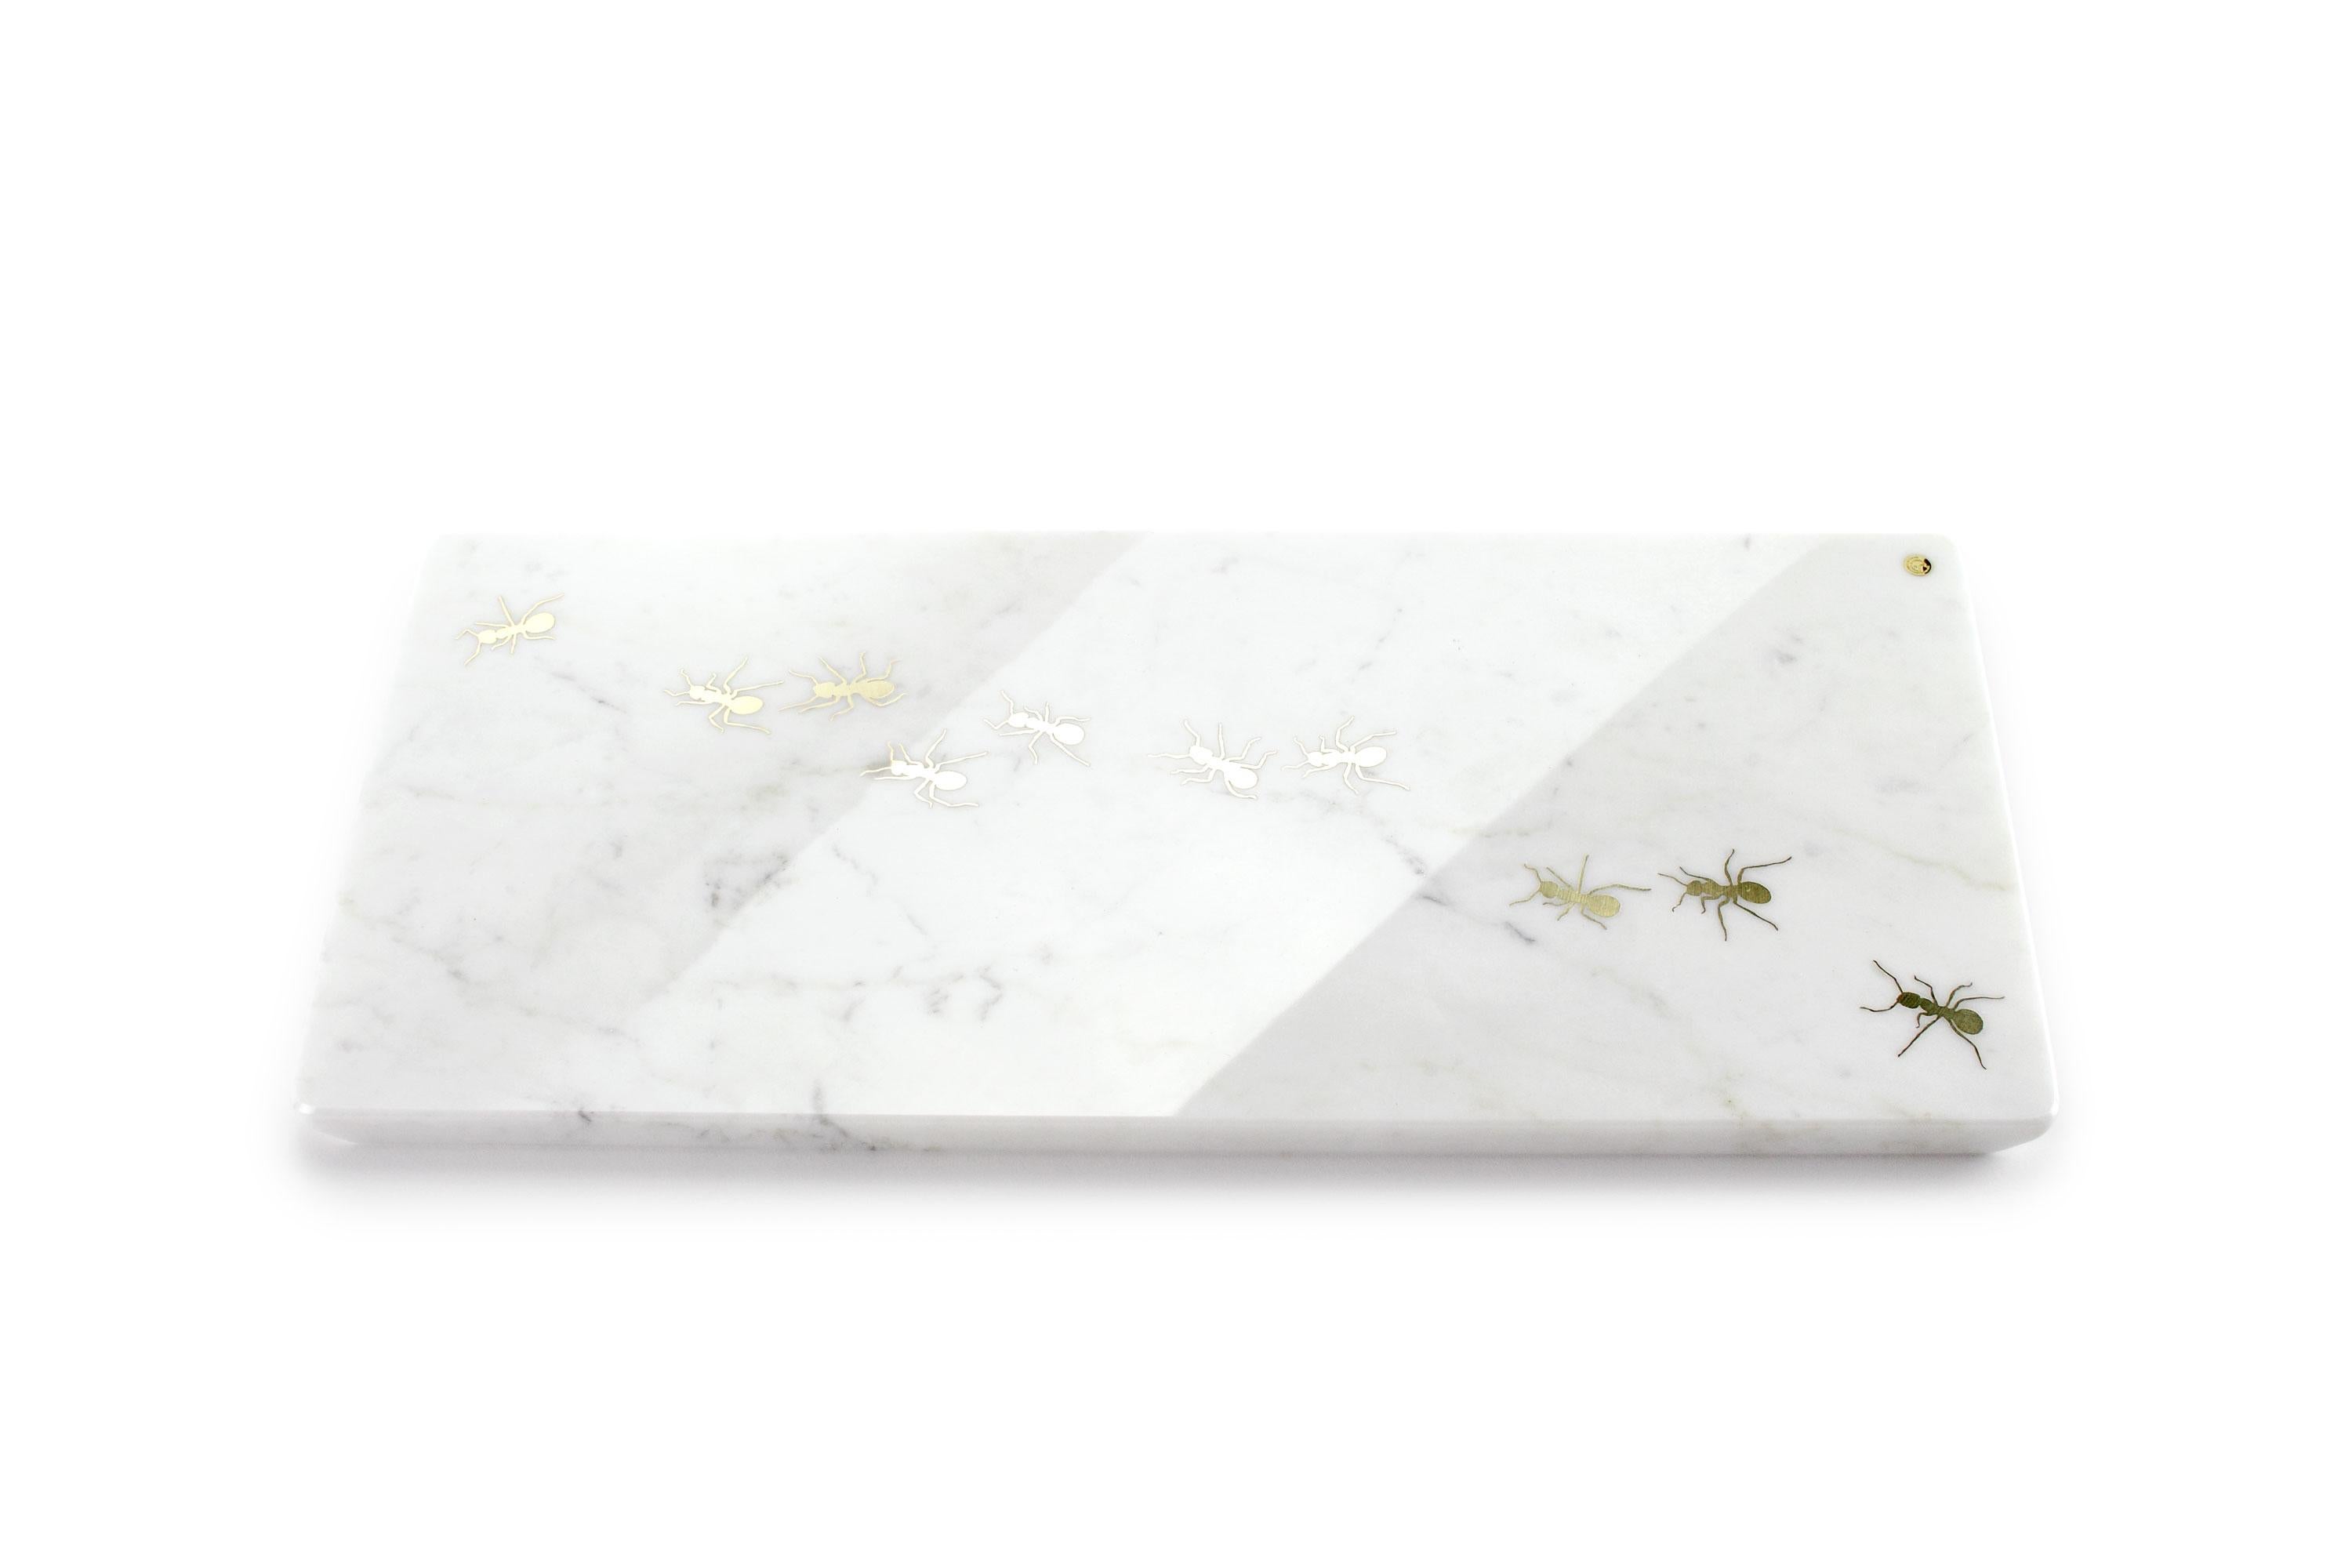 Tafelaufsatz / Servierplatte aus weißem Carrara-Marmor mit polierter Messingeinlage.

Abmessungen: Bigli - L 45 B 20,5 H 1,5 cm
Auch erhältlich: Medium - L 45 B 12 H 1,5 cm oder Small - L 26 B 11 H 1,5 cm

100% handgefertigt in Italien. 

Marmor ist